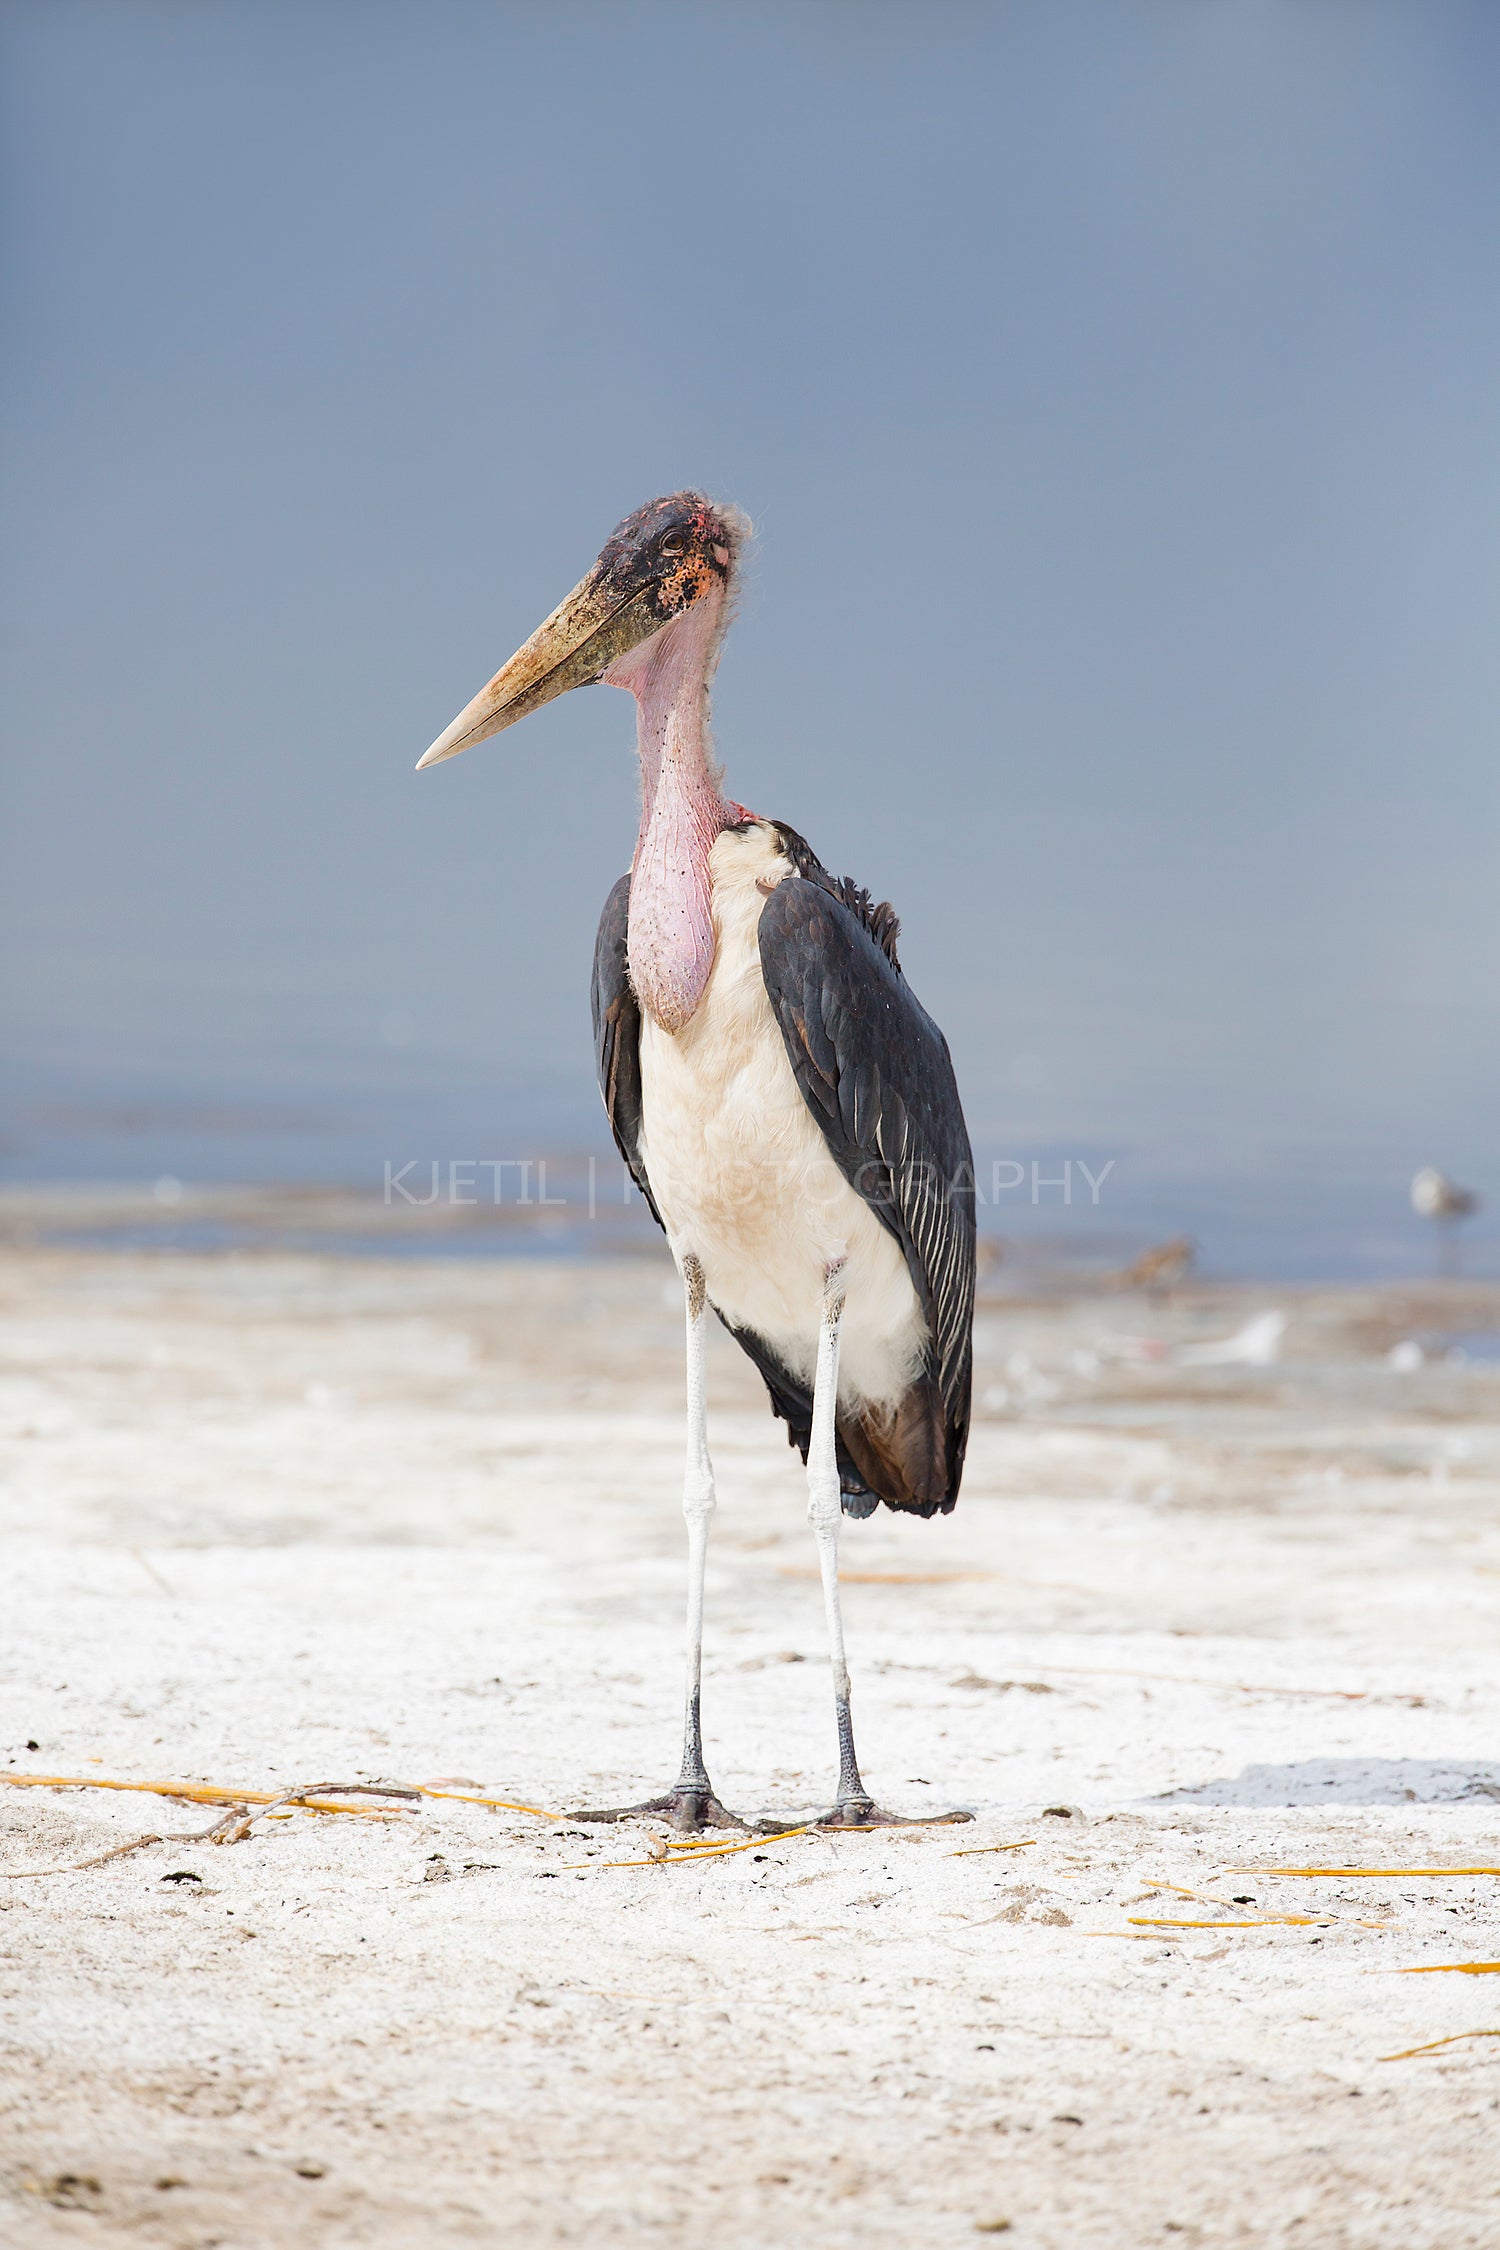 Marabou stork in Africa